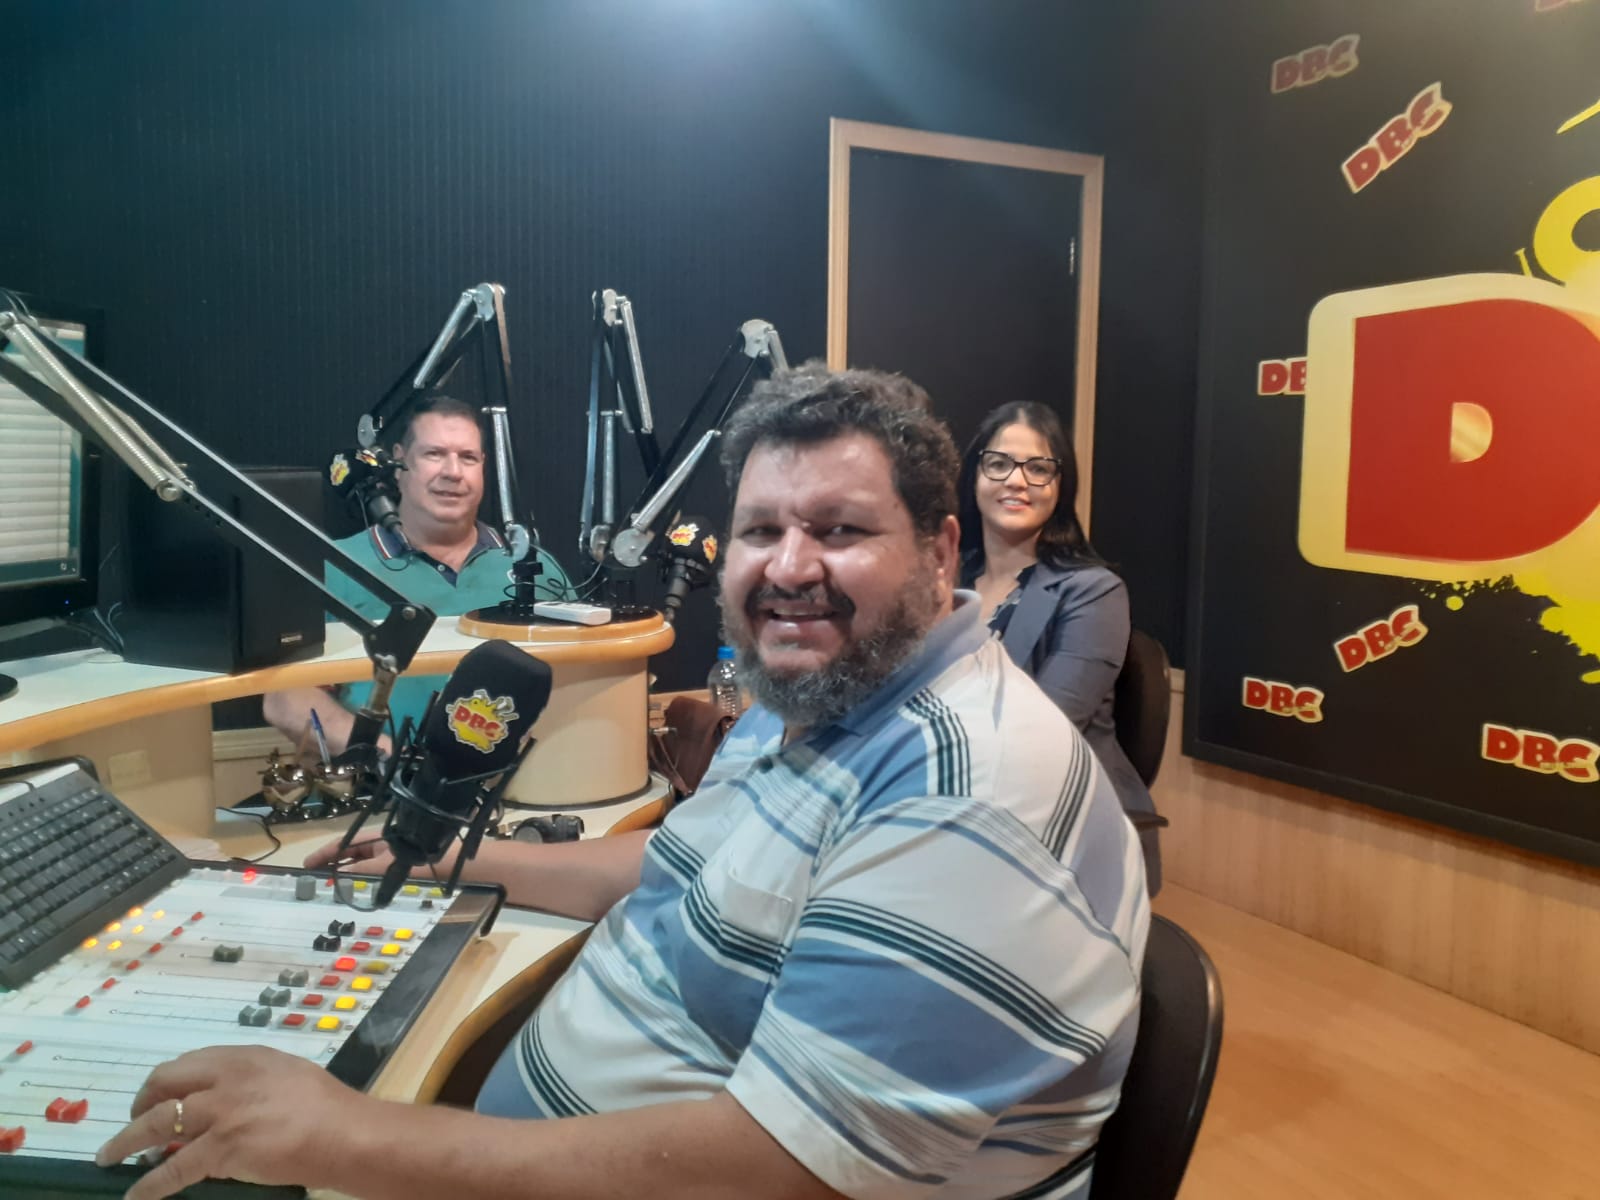 Em entrevista a Rádio DBC, candidata a Deputada Federal Andreia Tofollo afirma que para mudar temos que ter voz em Brasília